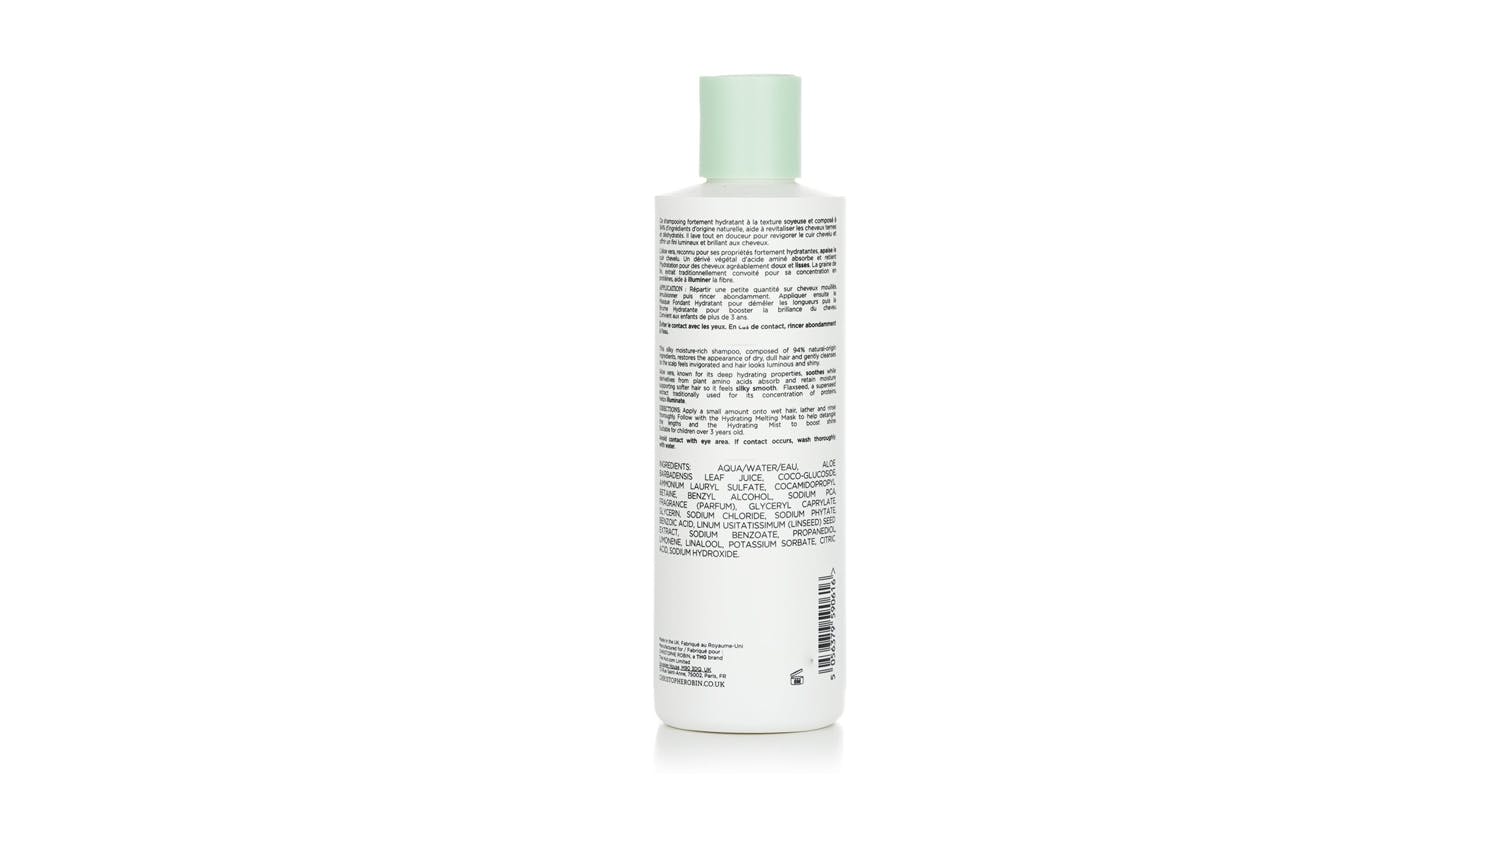 Hydrating Shampoo with Aloe Vera - 250ml/8.4oz